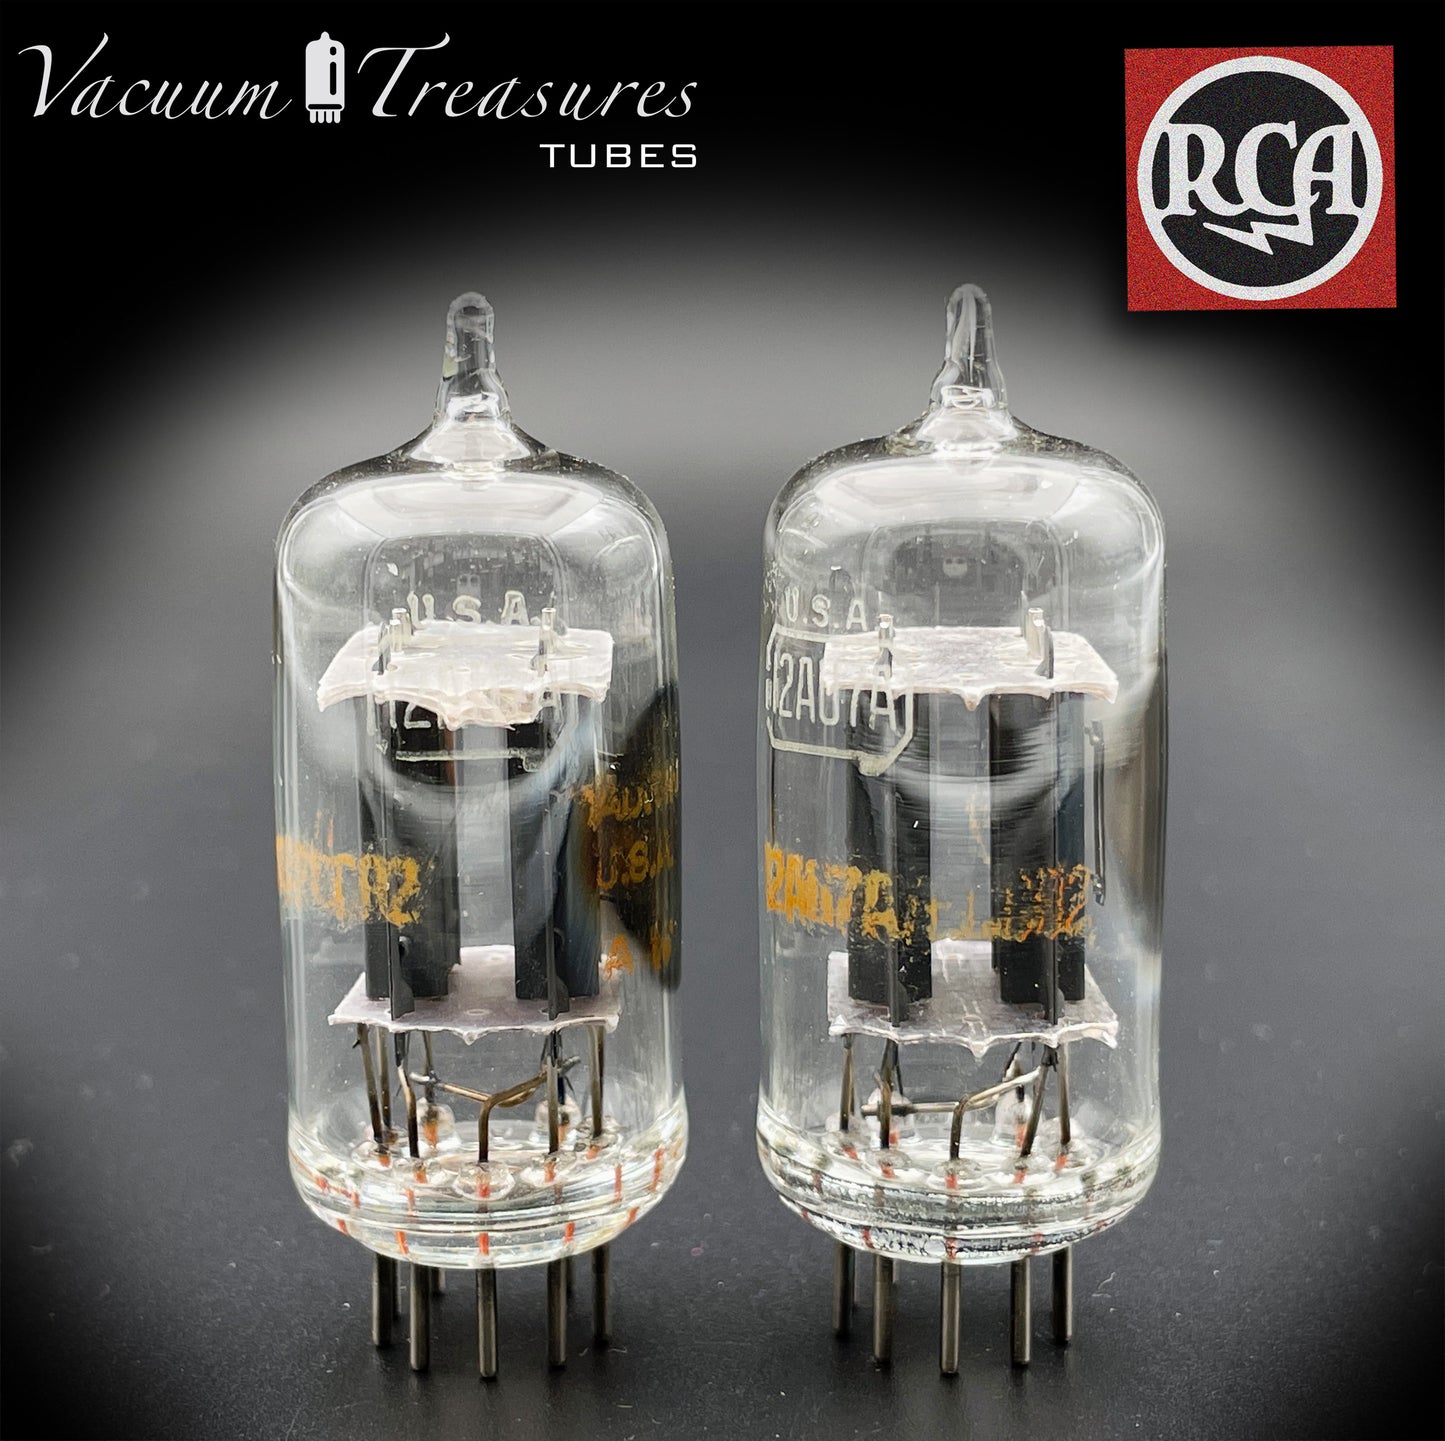 12AU7 A (ECC82) RCA Clear TOP longues plaques grises latérales [] Getter tubes assortis fabriqués aux États-Unis